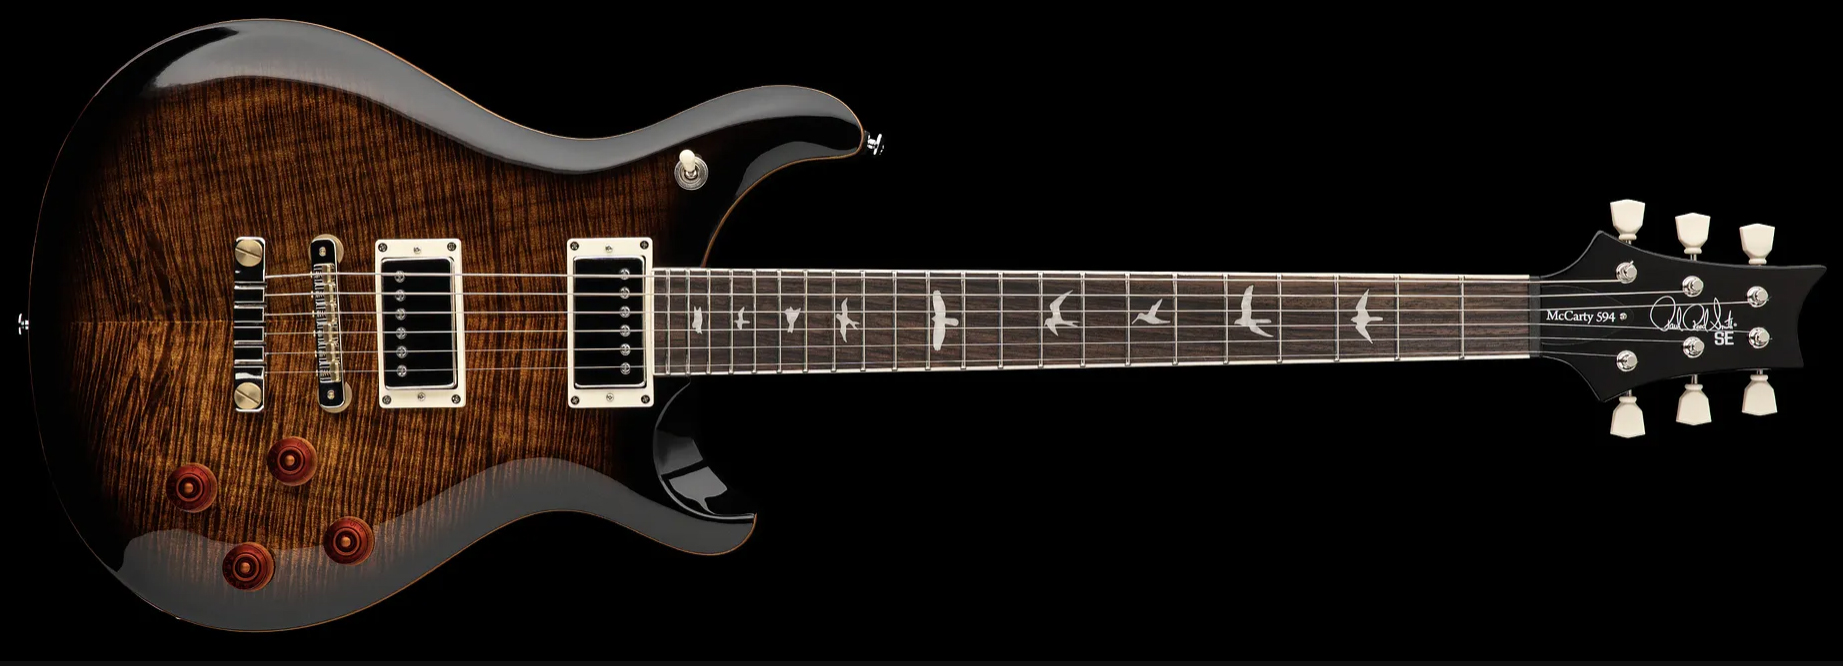 Prs Se Mccarty 594 2h Ht Rw - Black Gold Burst - Guitarra eléctrica de doble corte. - Variation 2